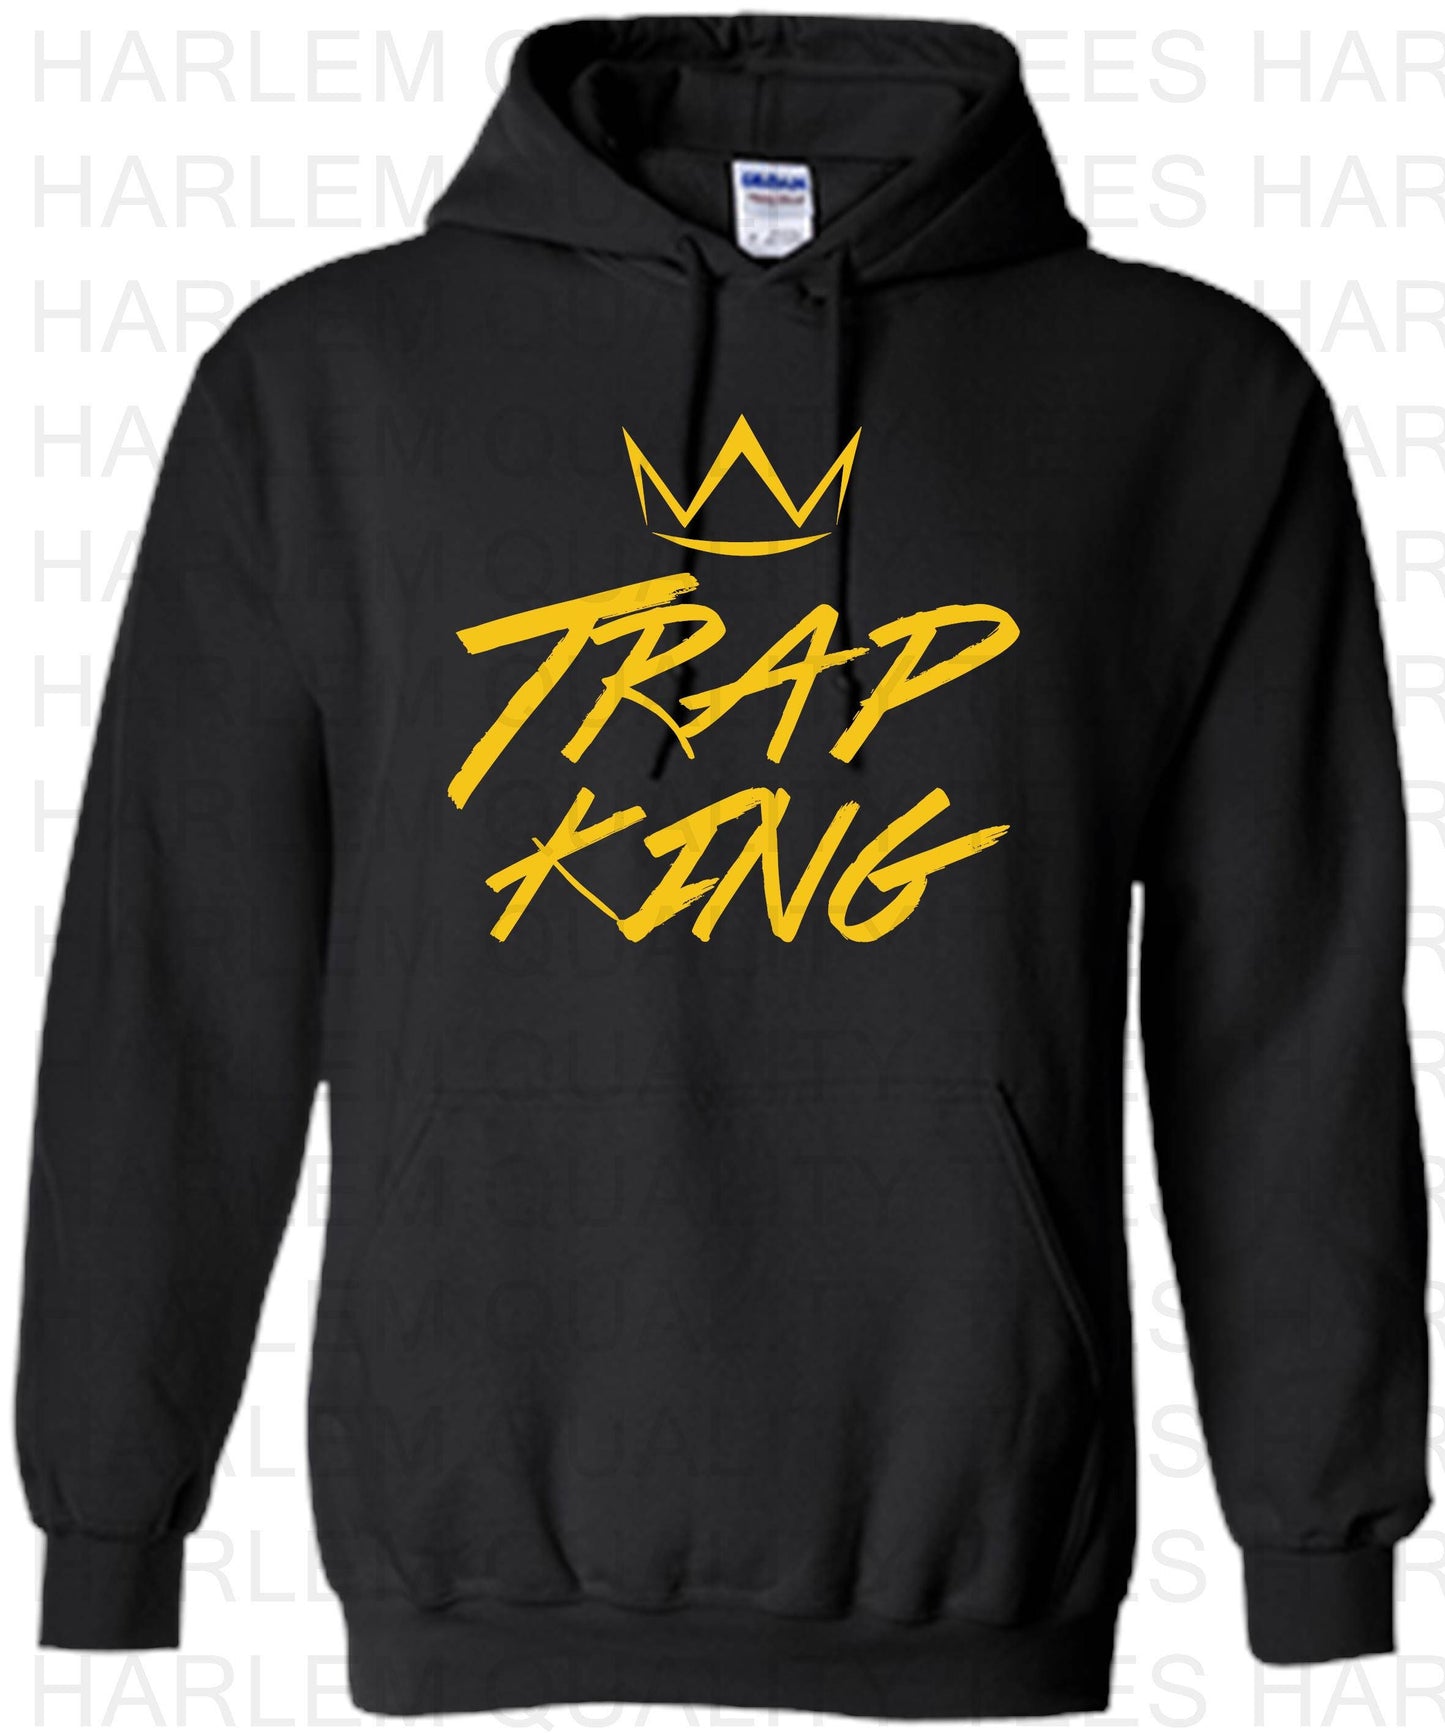 Trap King & Trap King